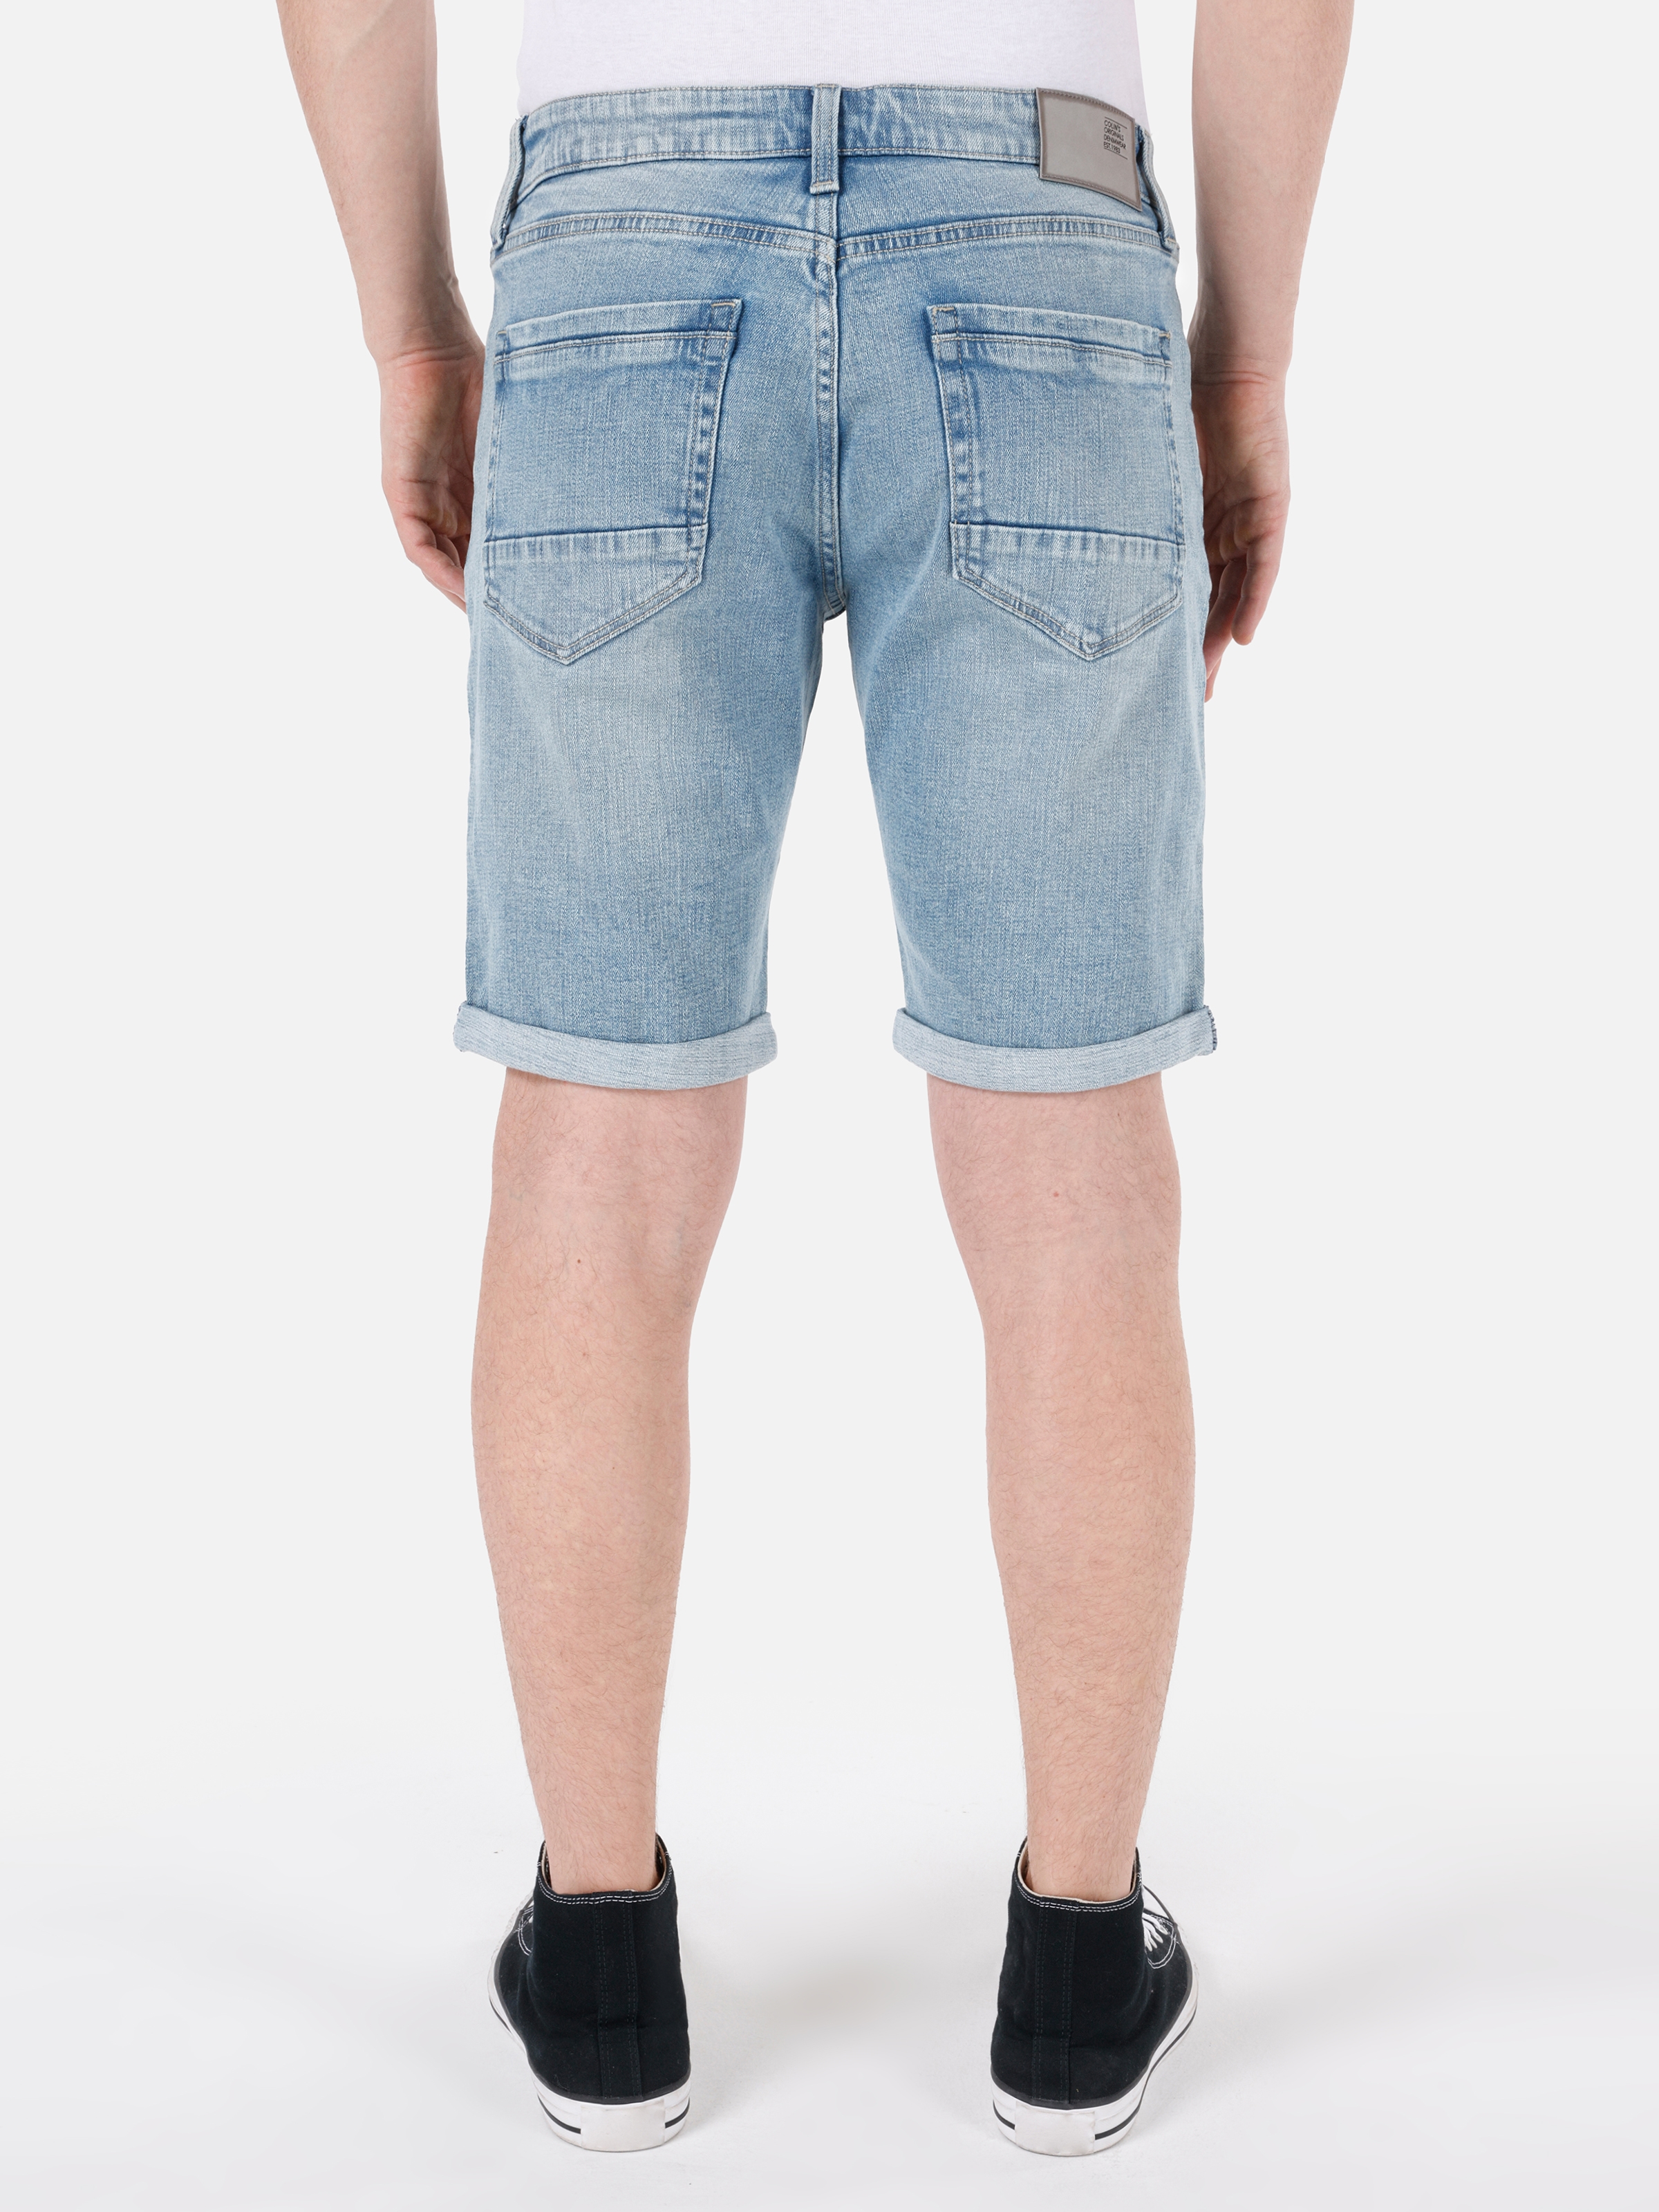 Afișați detalii pentru Short / Pantaloni Scurti De Barbati Albastru Straight Fit 044 KARL 